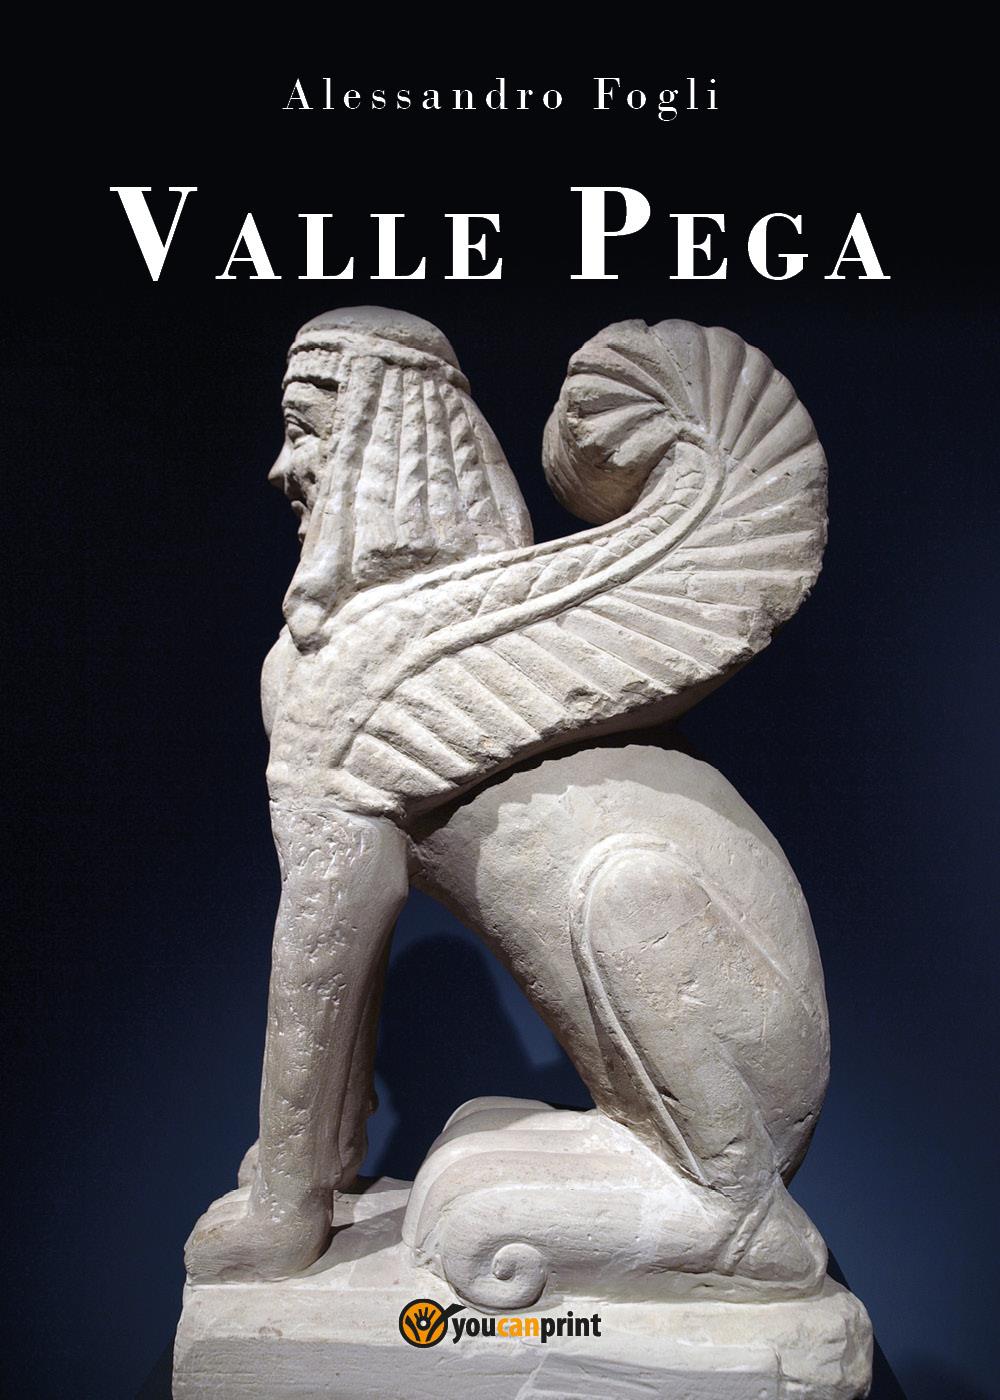 Valle Pega